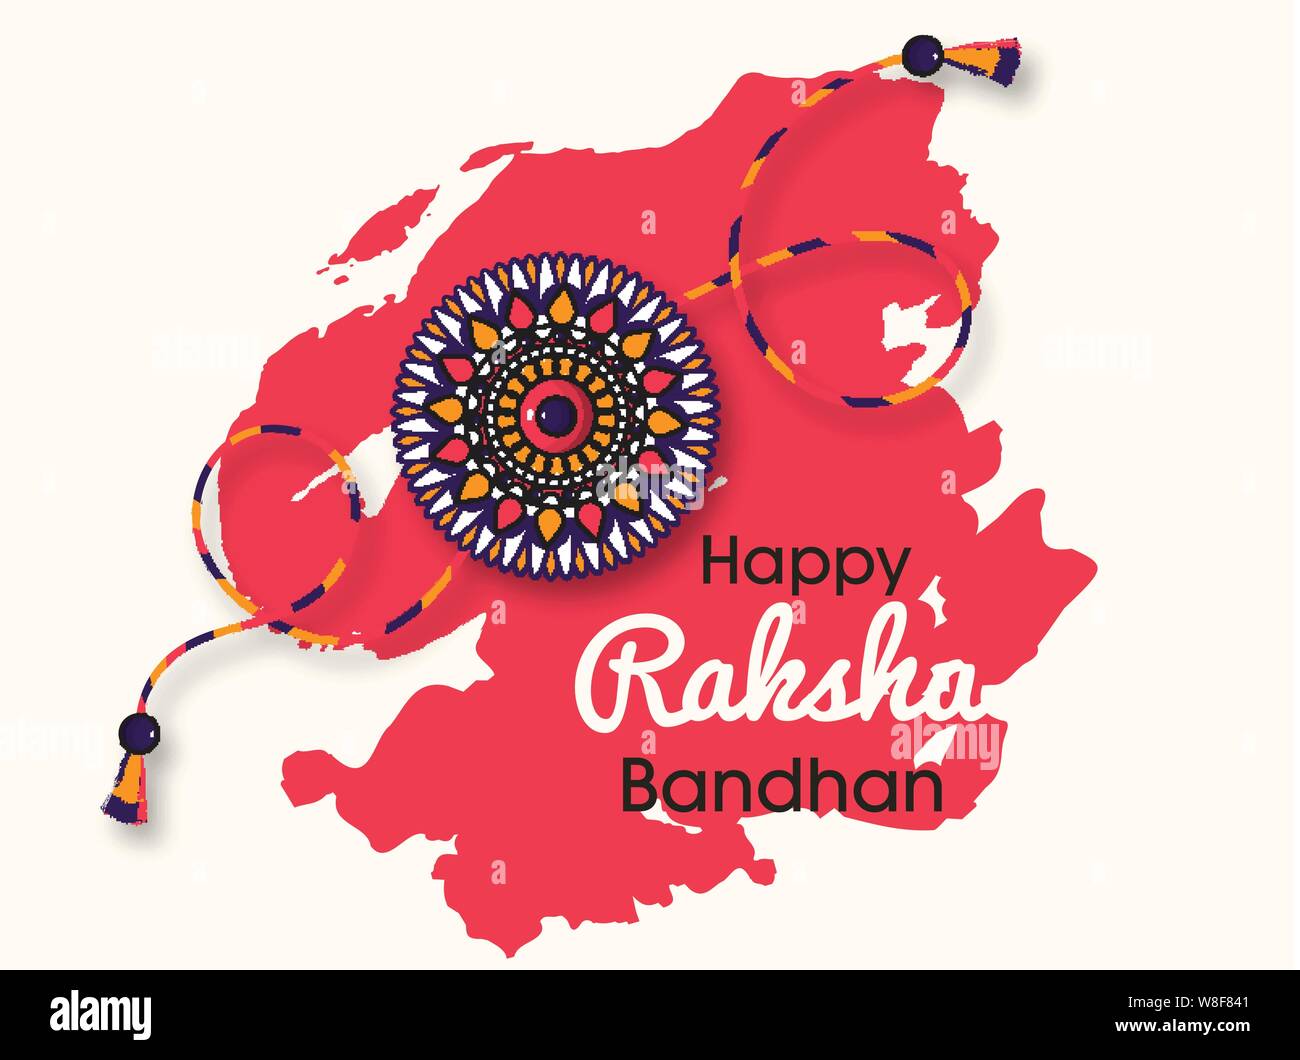 Beautiful rakhi with background for Happy Raksha Bandhan celebrations Stock  Vector Image & Art - Alamy